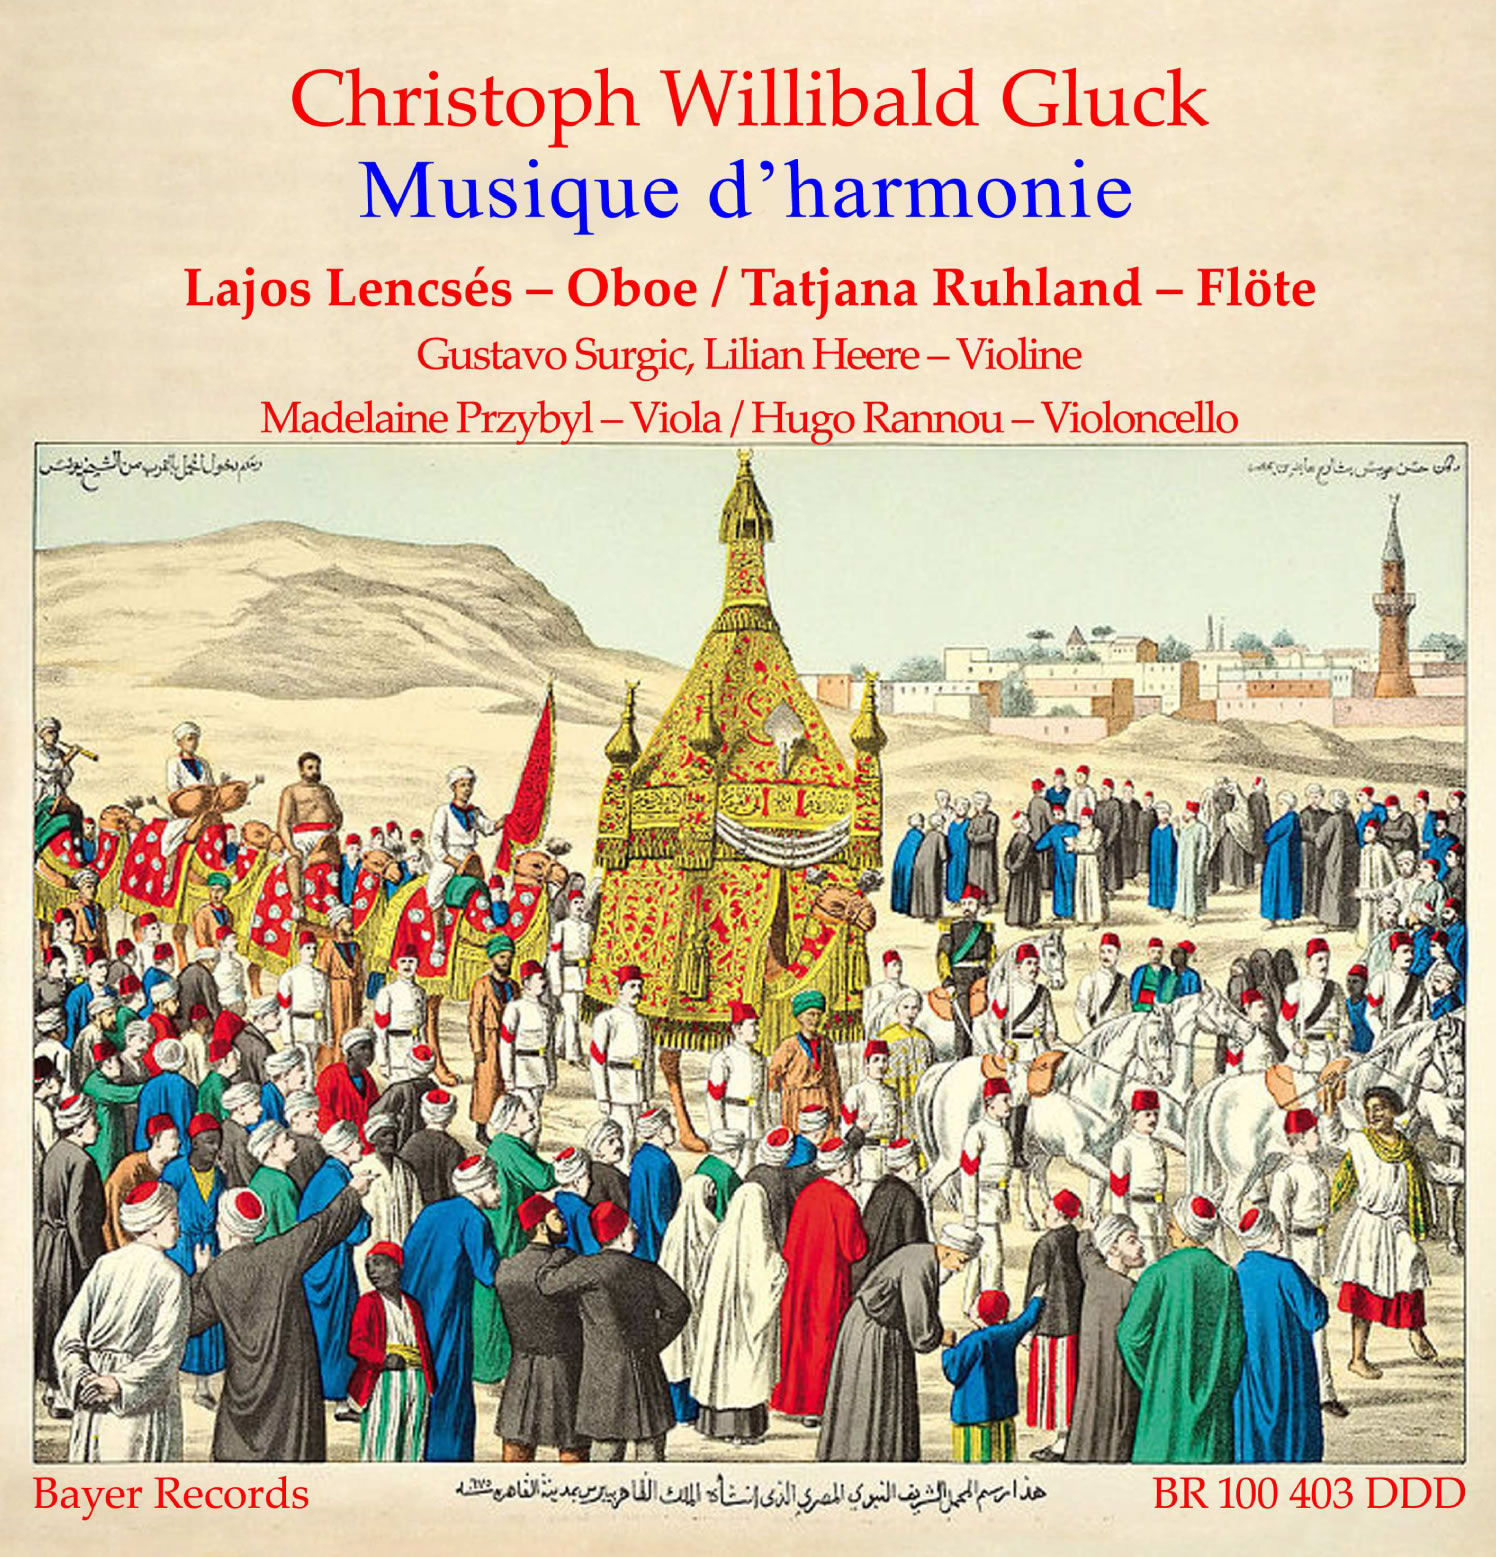 Christoph Willibald Gluck - Musique d’harmonie (Erstveröffentlichung)